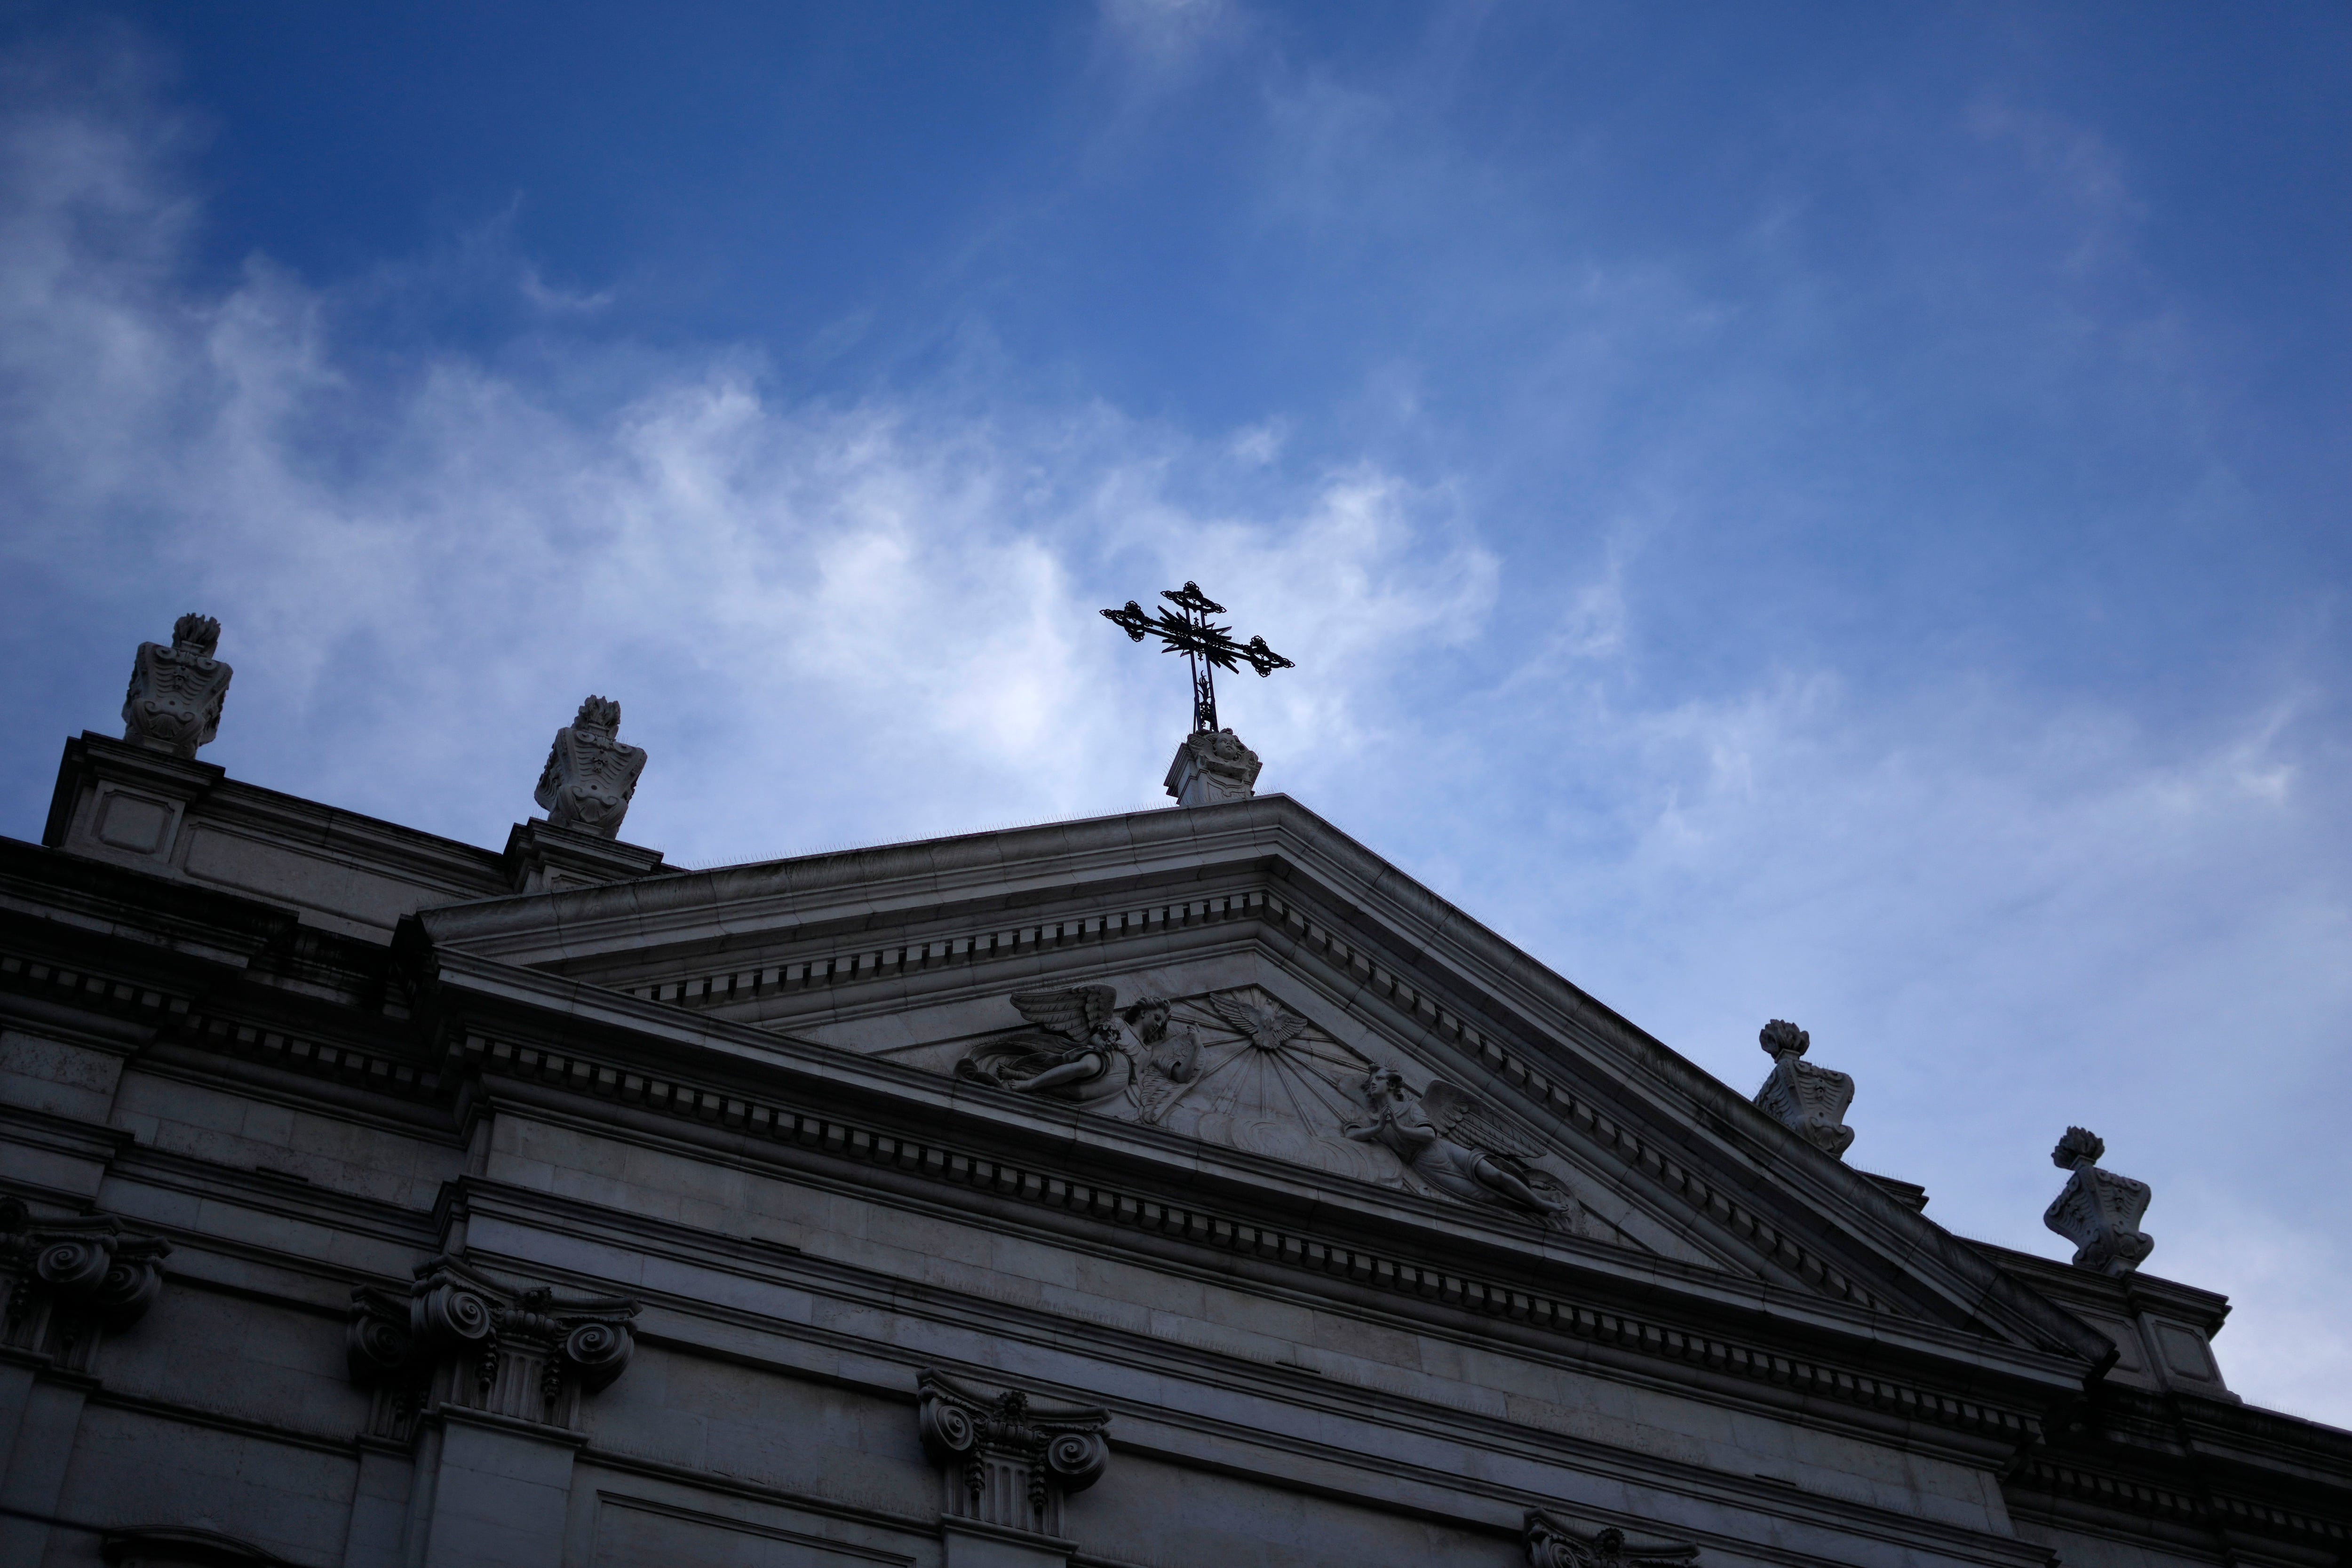 Una investigación identificó a tres clérigos denunciados que aún siguen activos en iglesias del área de San Francisco (AP)